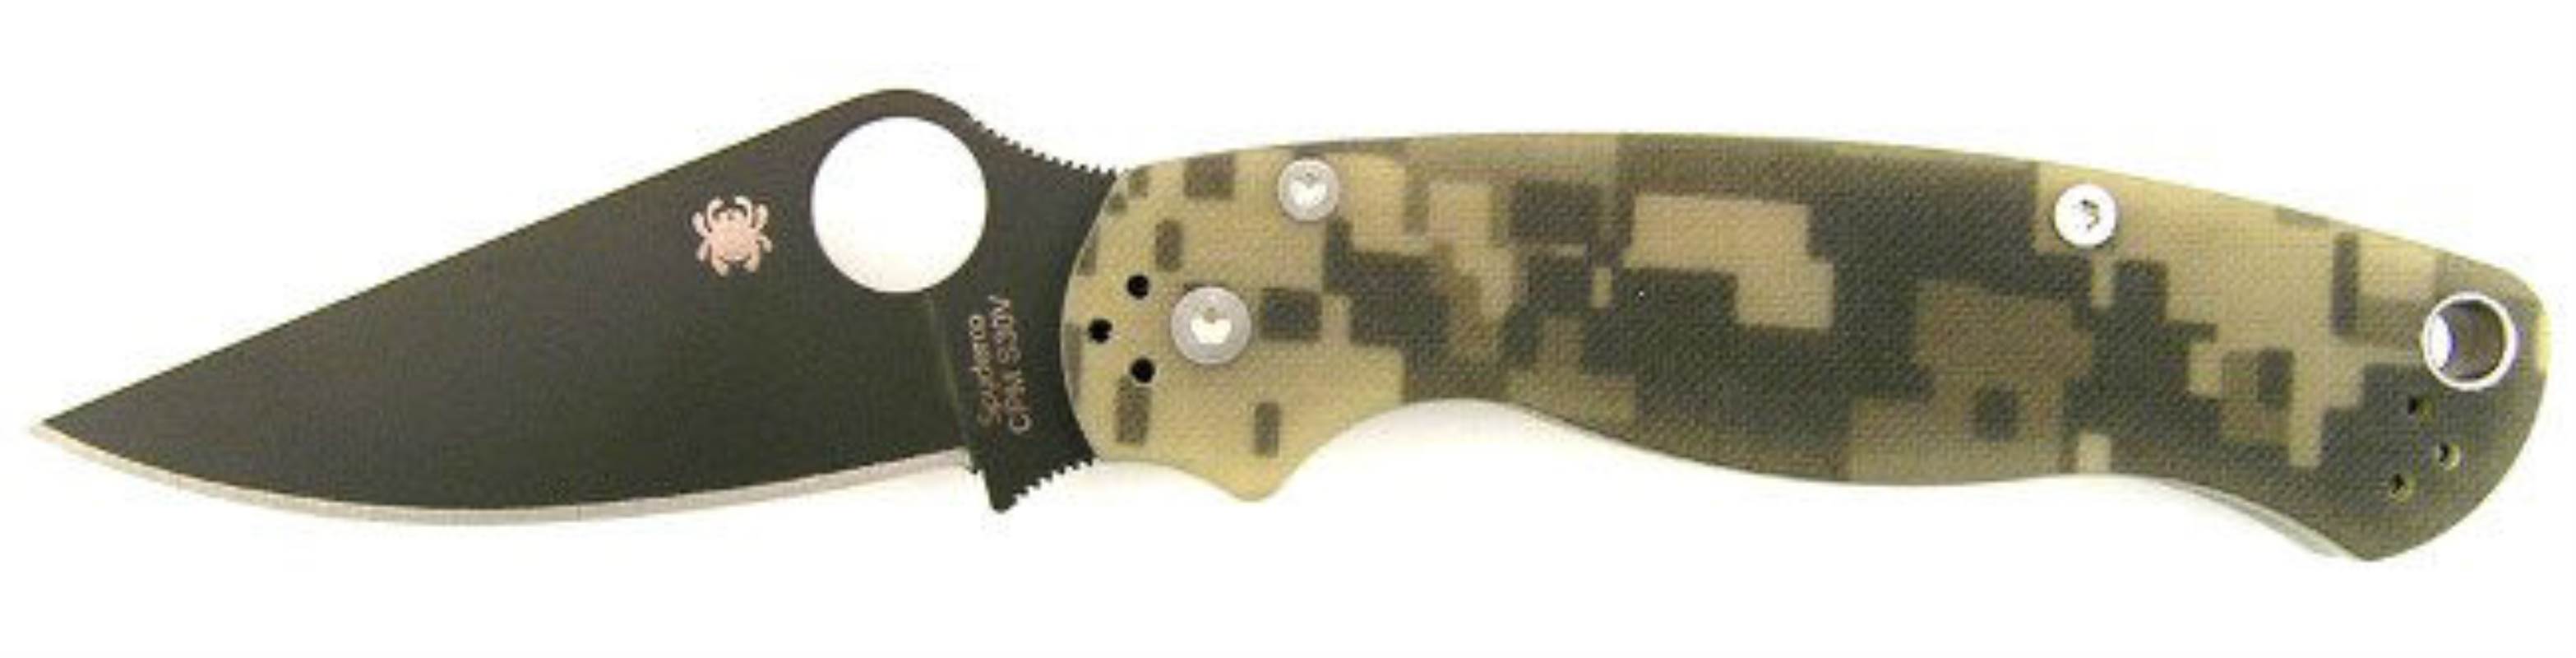 Para-Military2 Camo Handle Black Blade